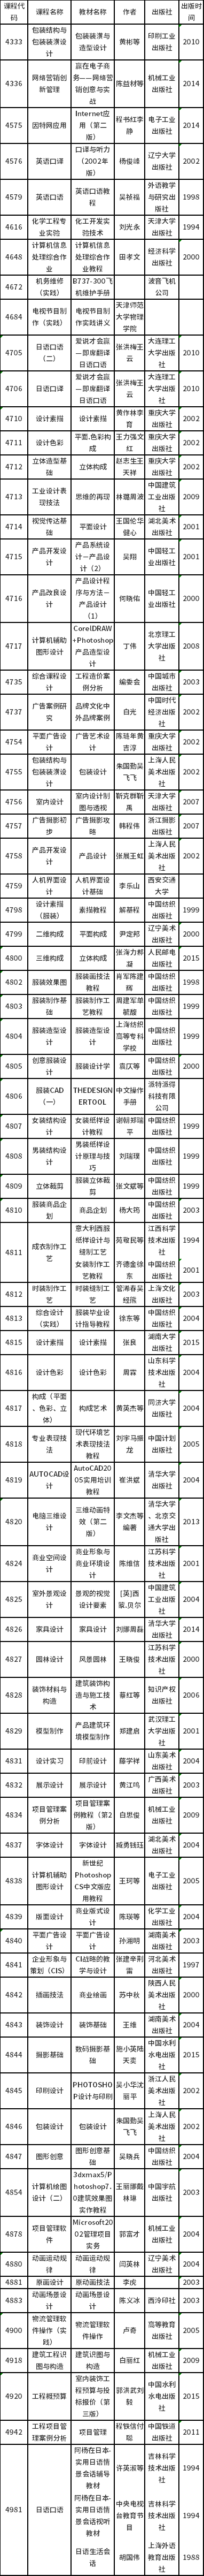 天津市2022年自学考试部分实践考核课程使用教材表